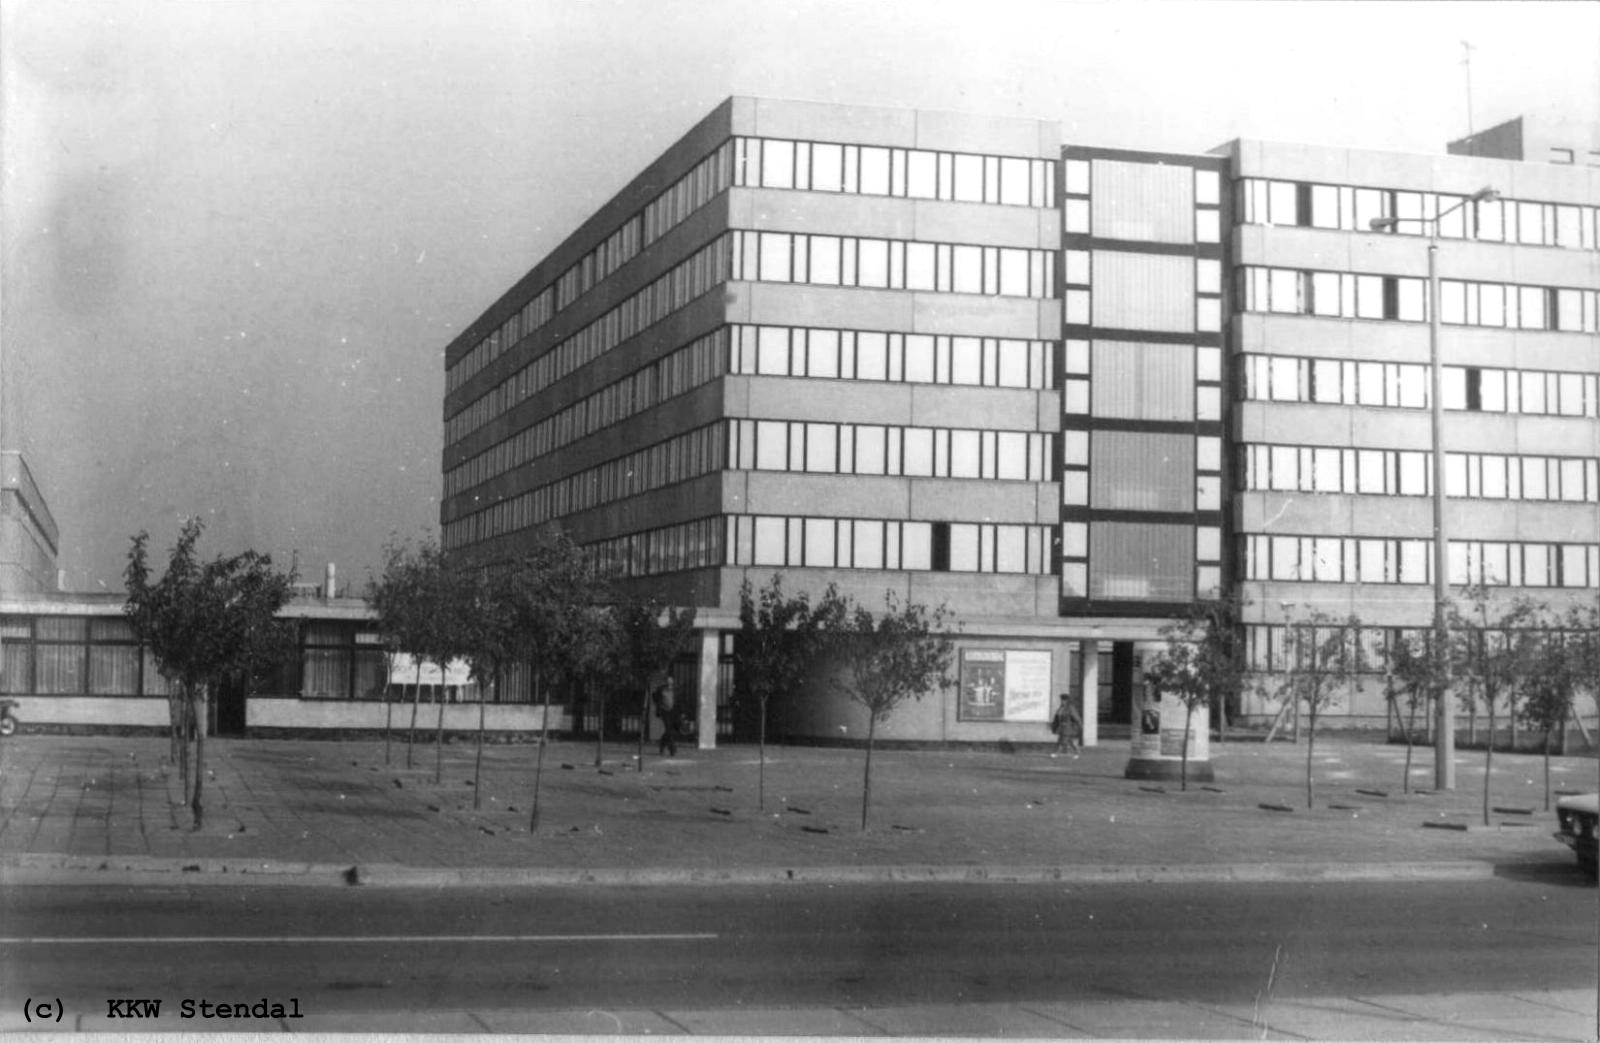  AKW Stendal, Baustelle 1988, Eingangszentrum, westlicher Eingang 